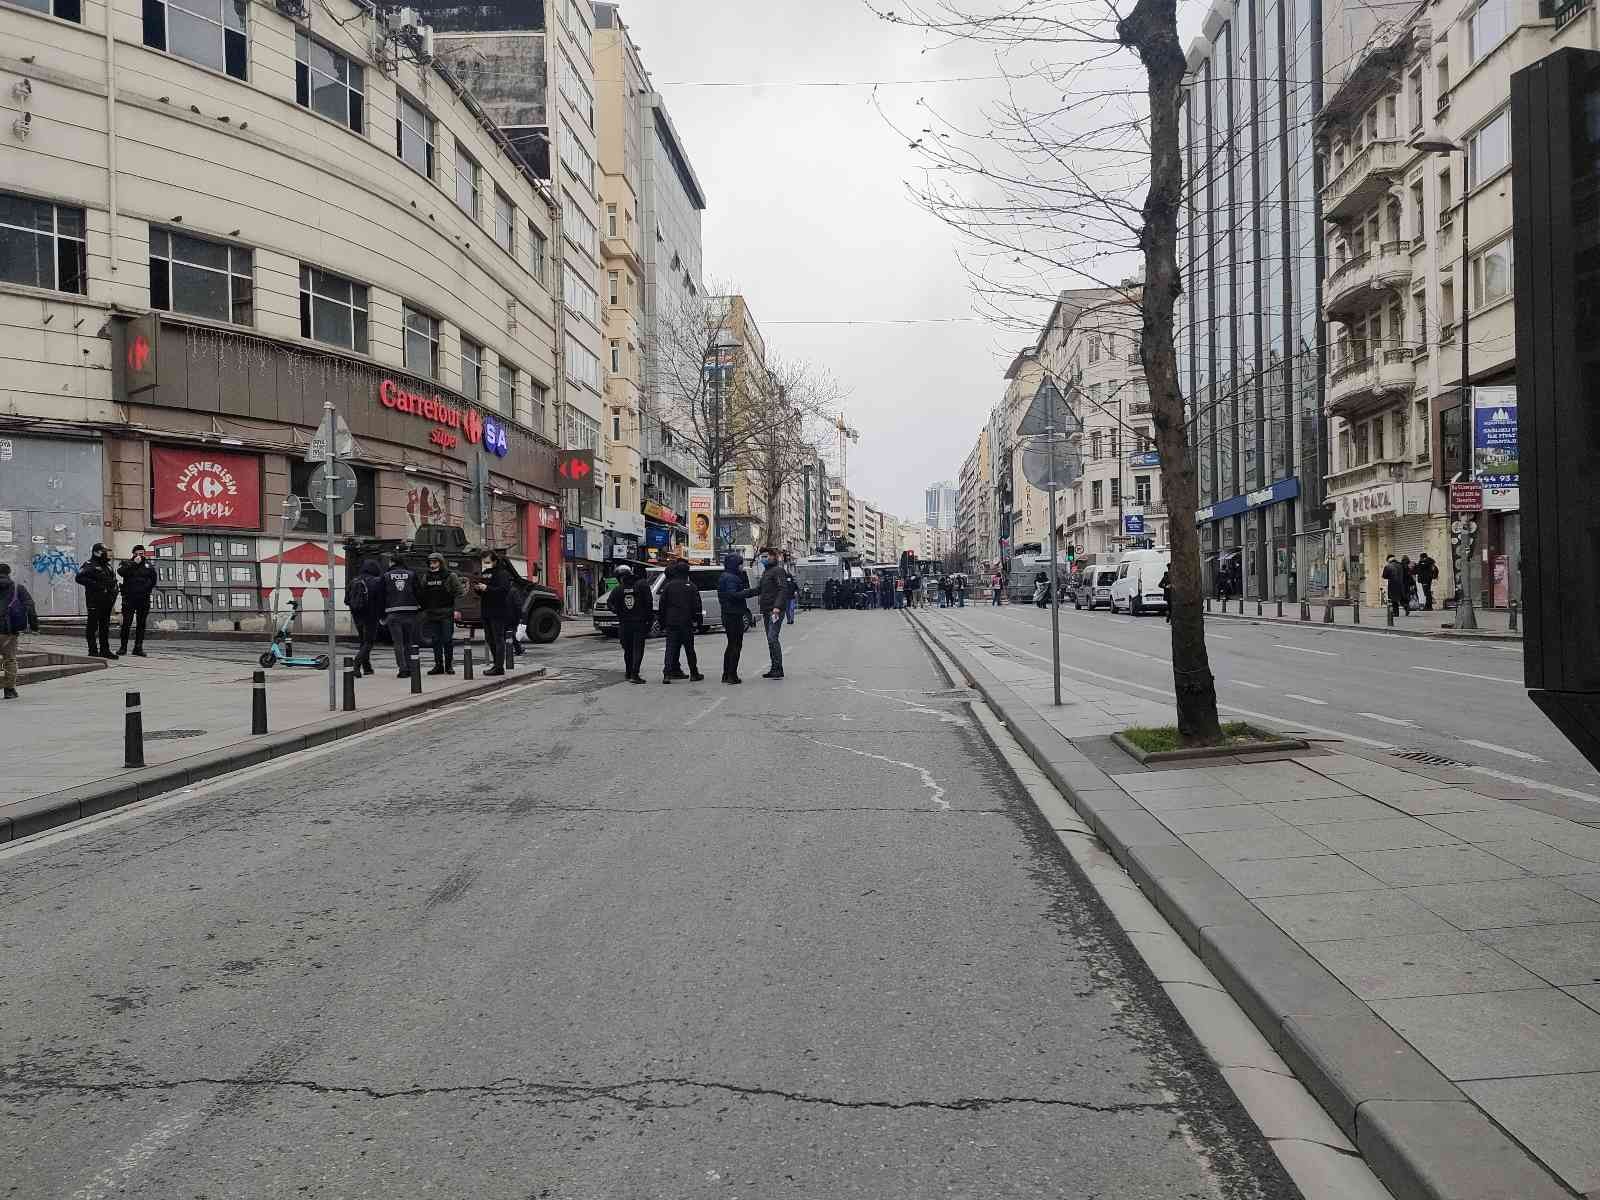 Şişli’de Hrant Dink’in anması için bazı yollar trafiğe kapatıldı #istanbul